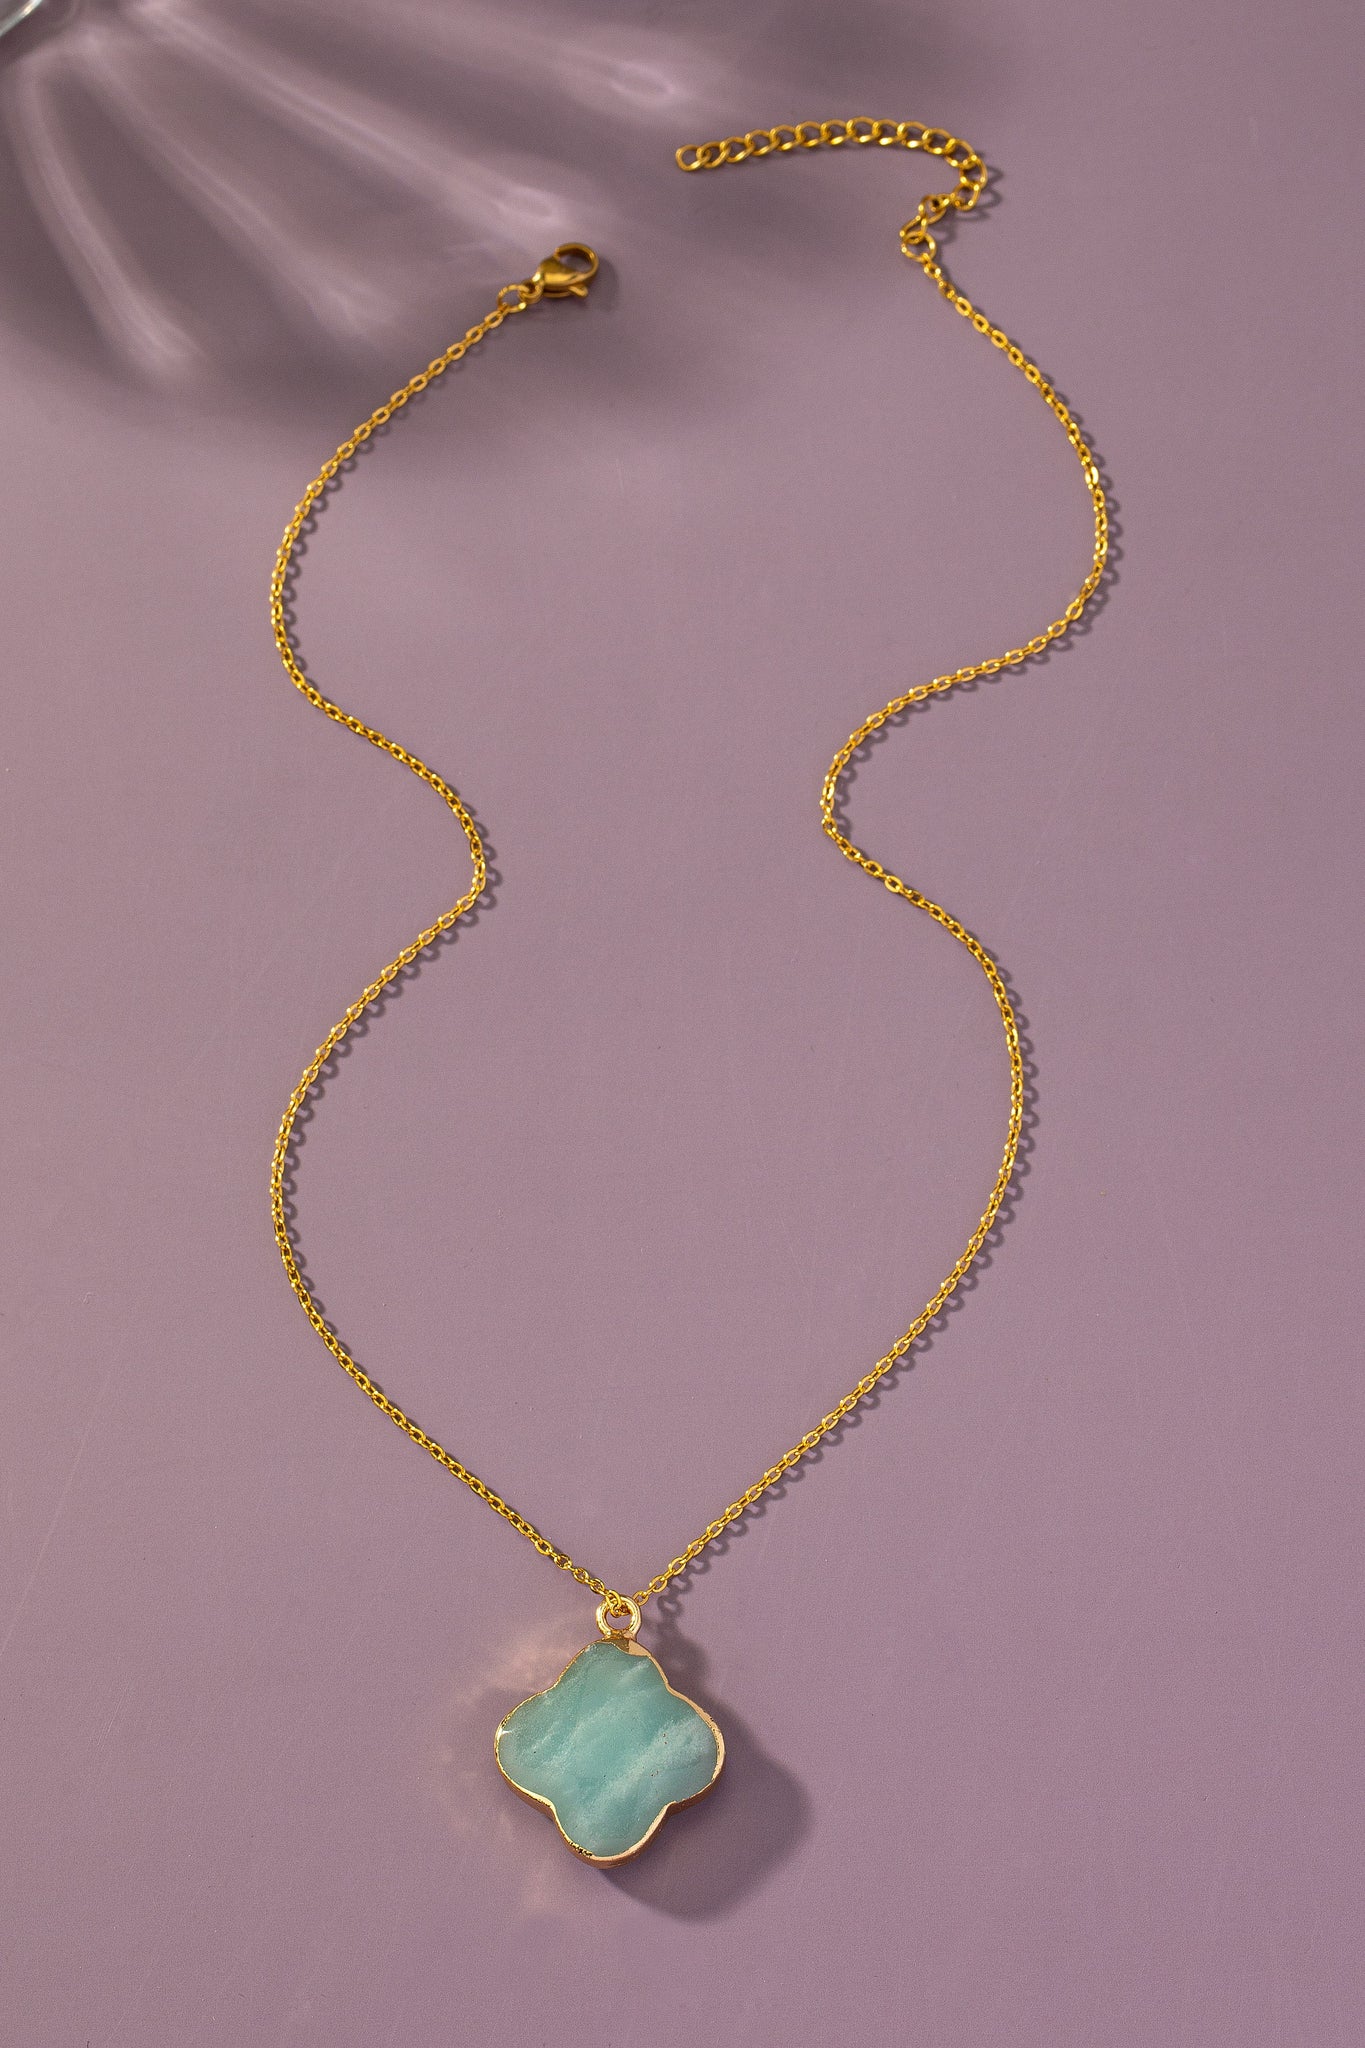 Semi precious necklace